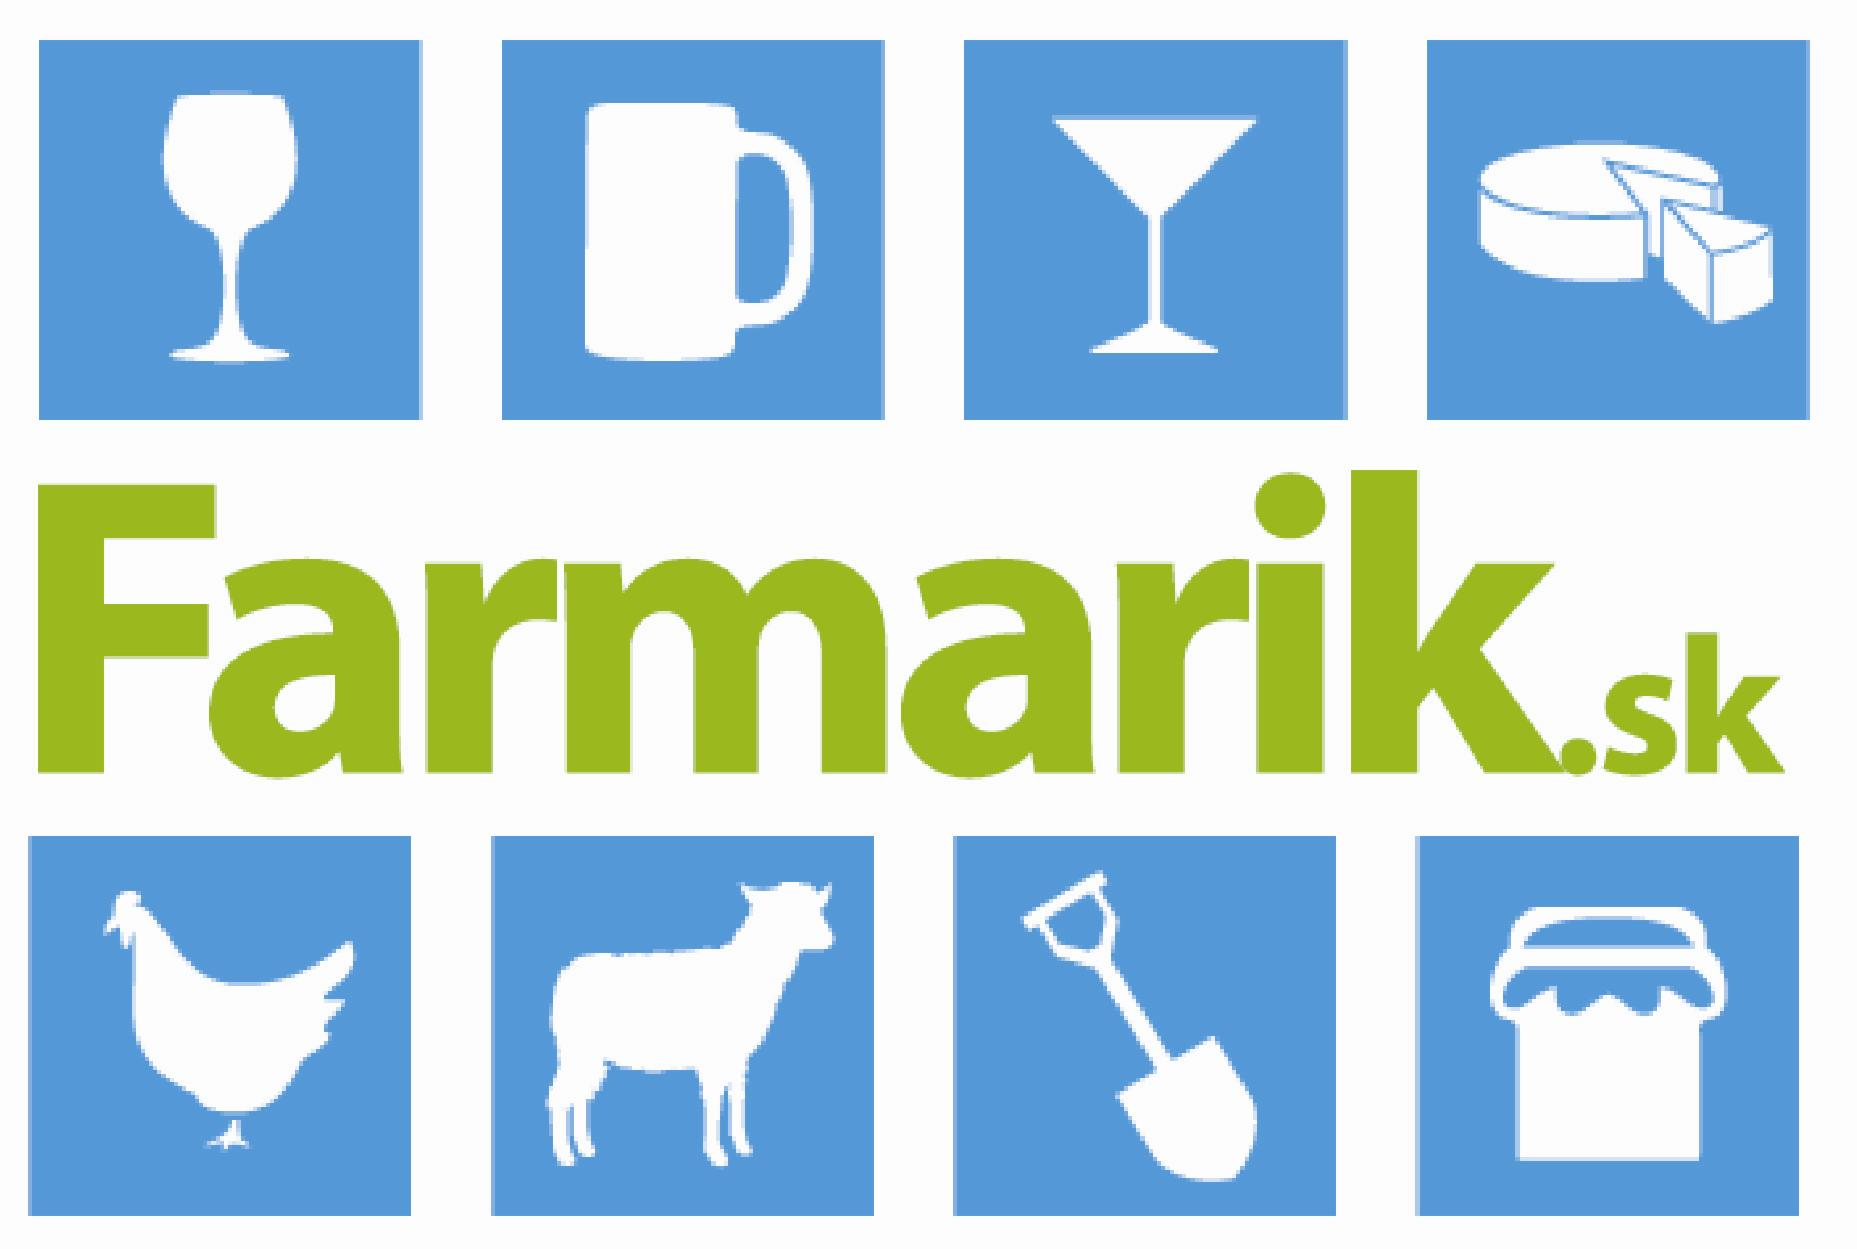 www.Farmarik.sk